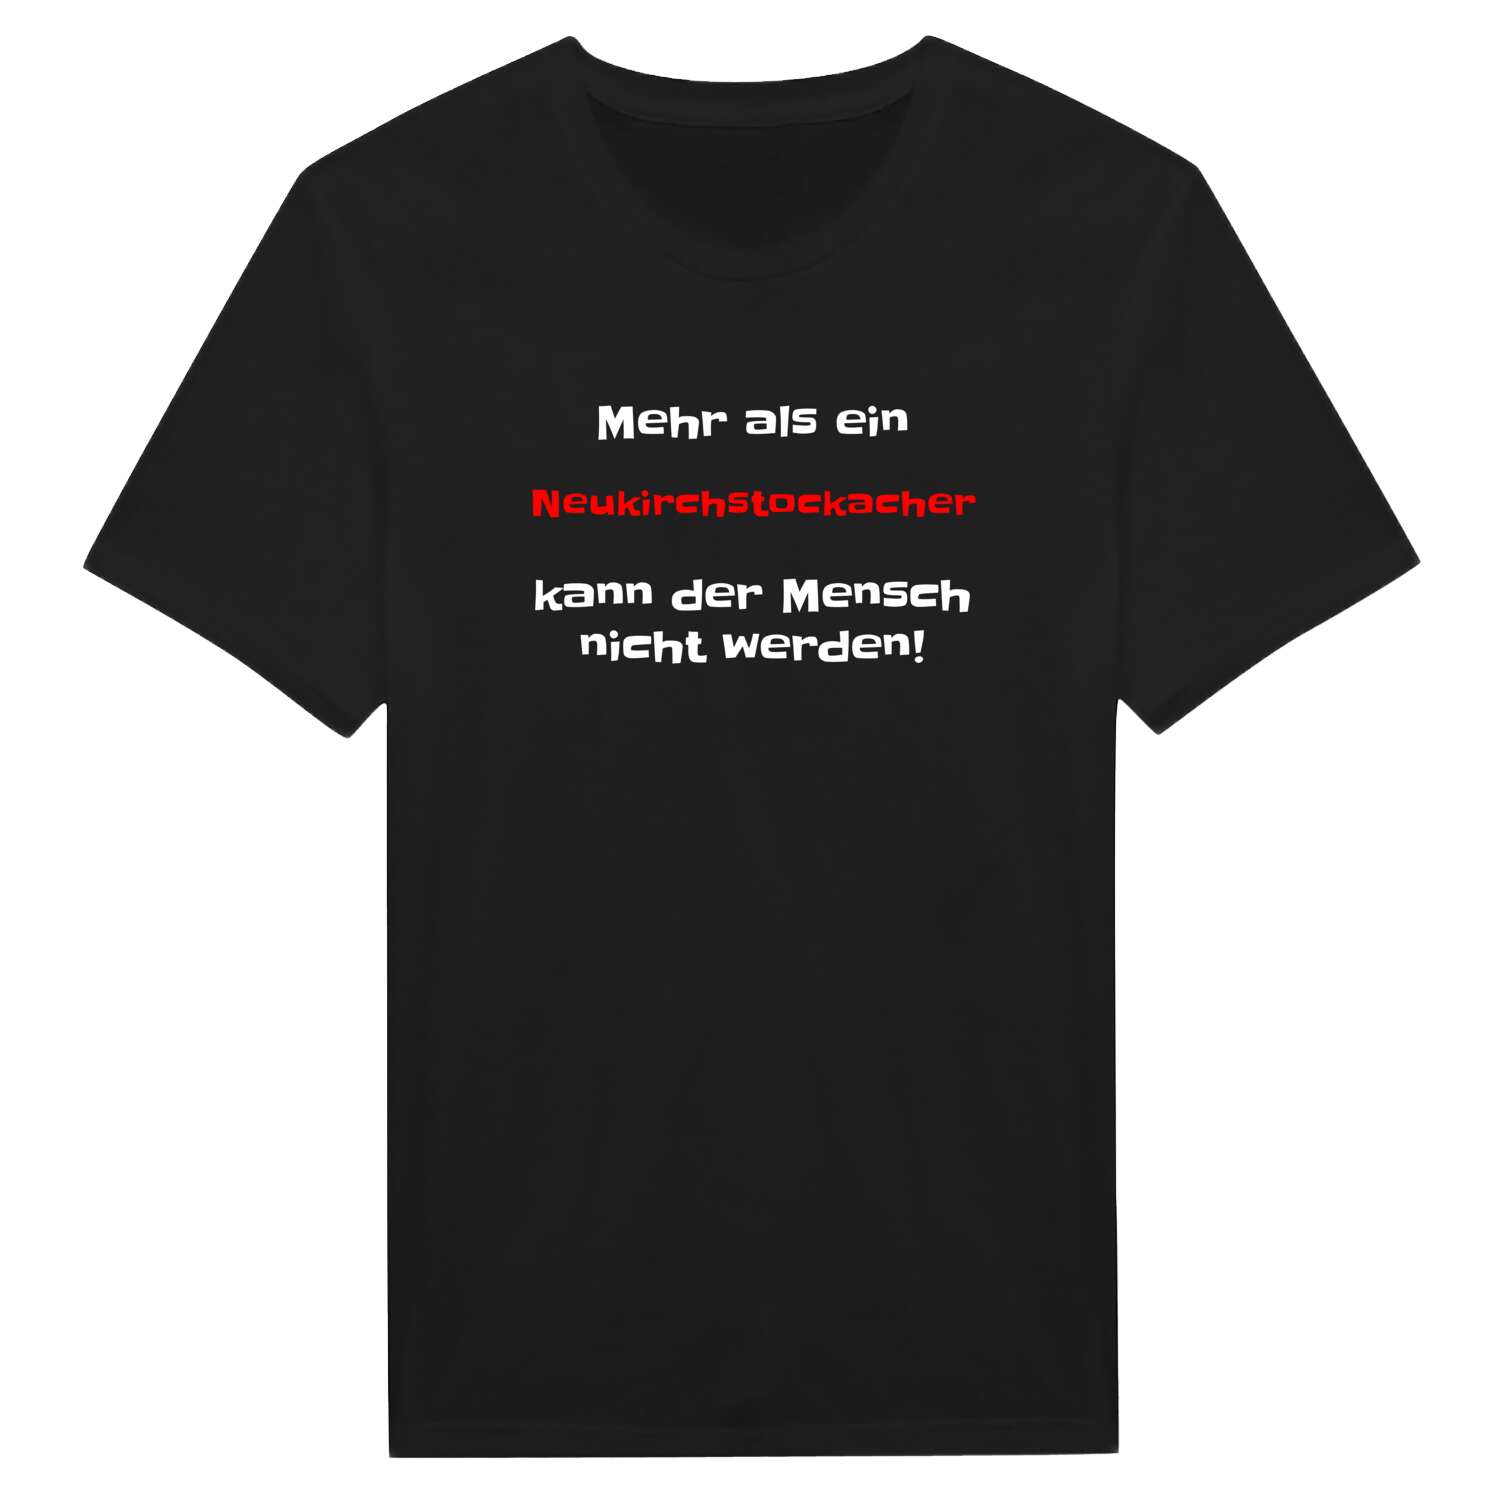 Neukirchstockach T-Shirt »Mehr als ein«